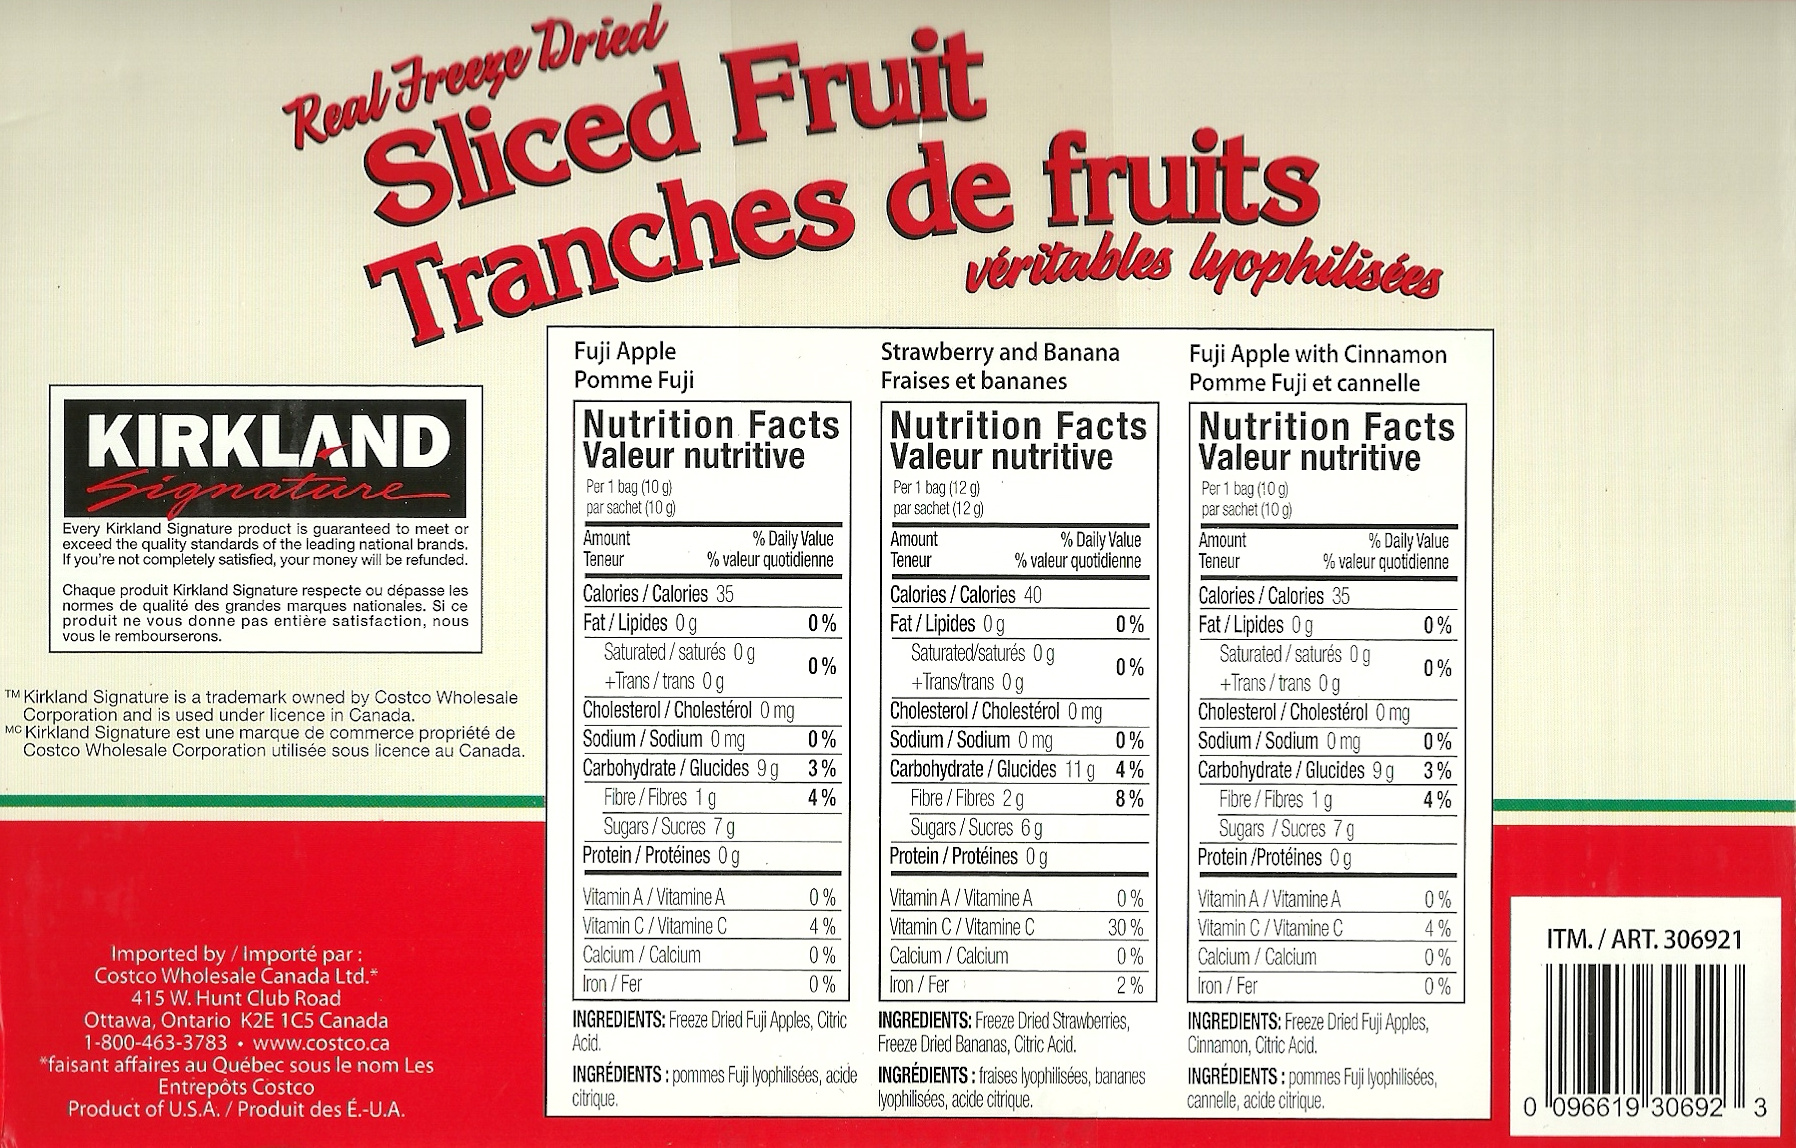 Kirkland-Signature-Real-Freeze-Dried-Slice-Fruit-calories